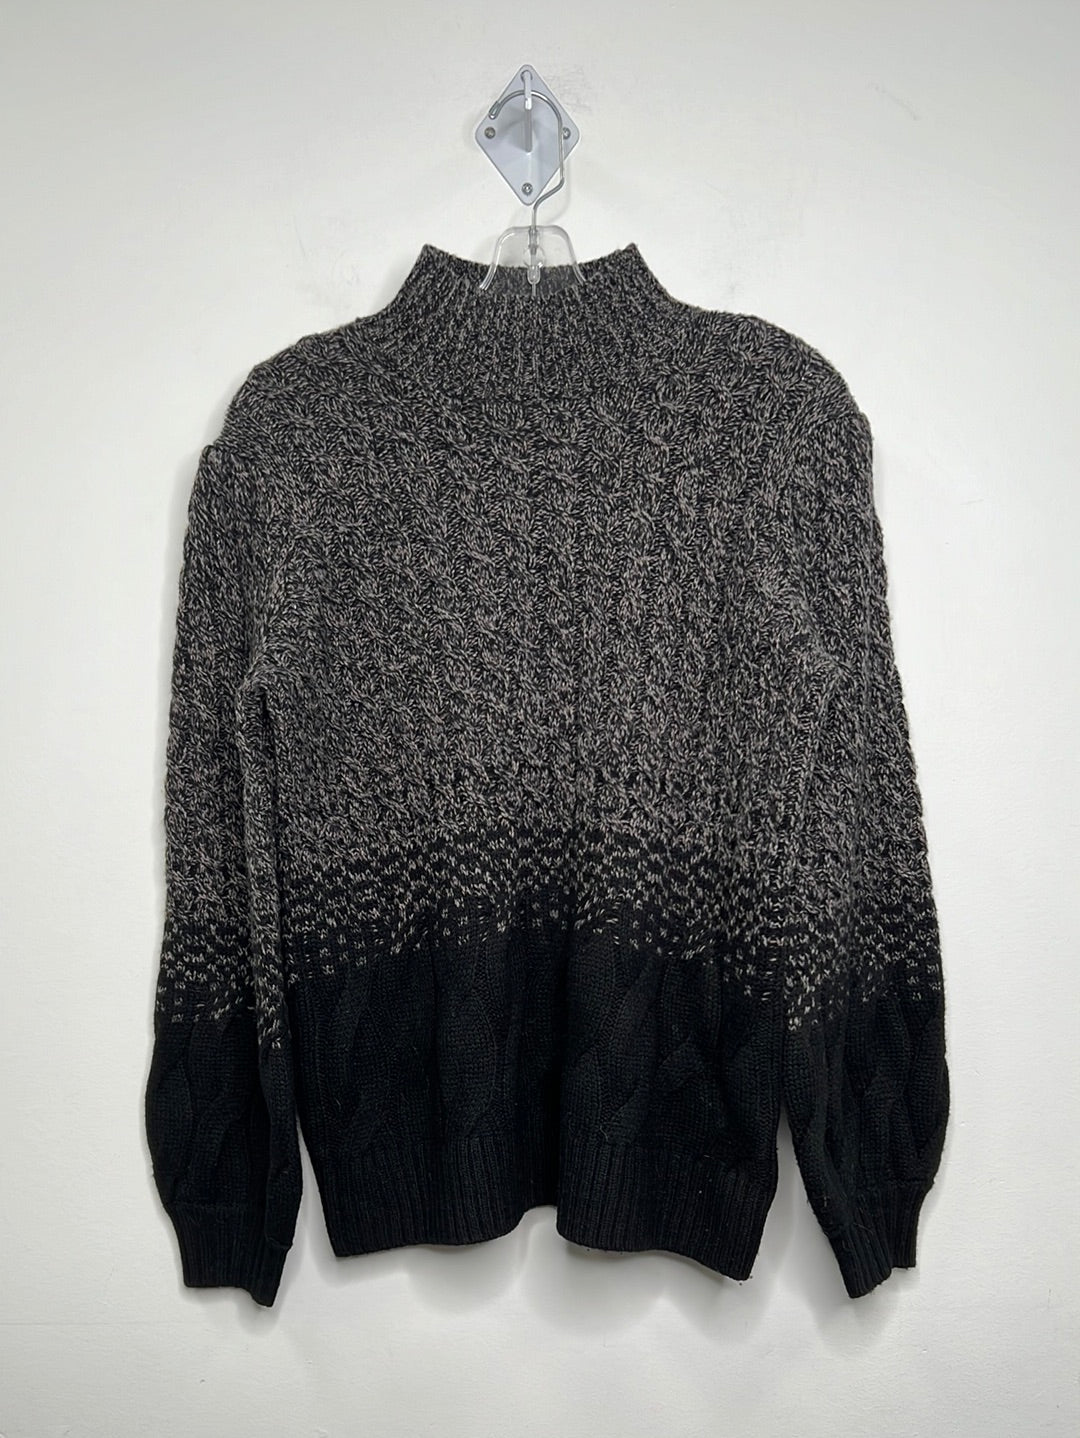 Tahari Wool Sweater (L)